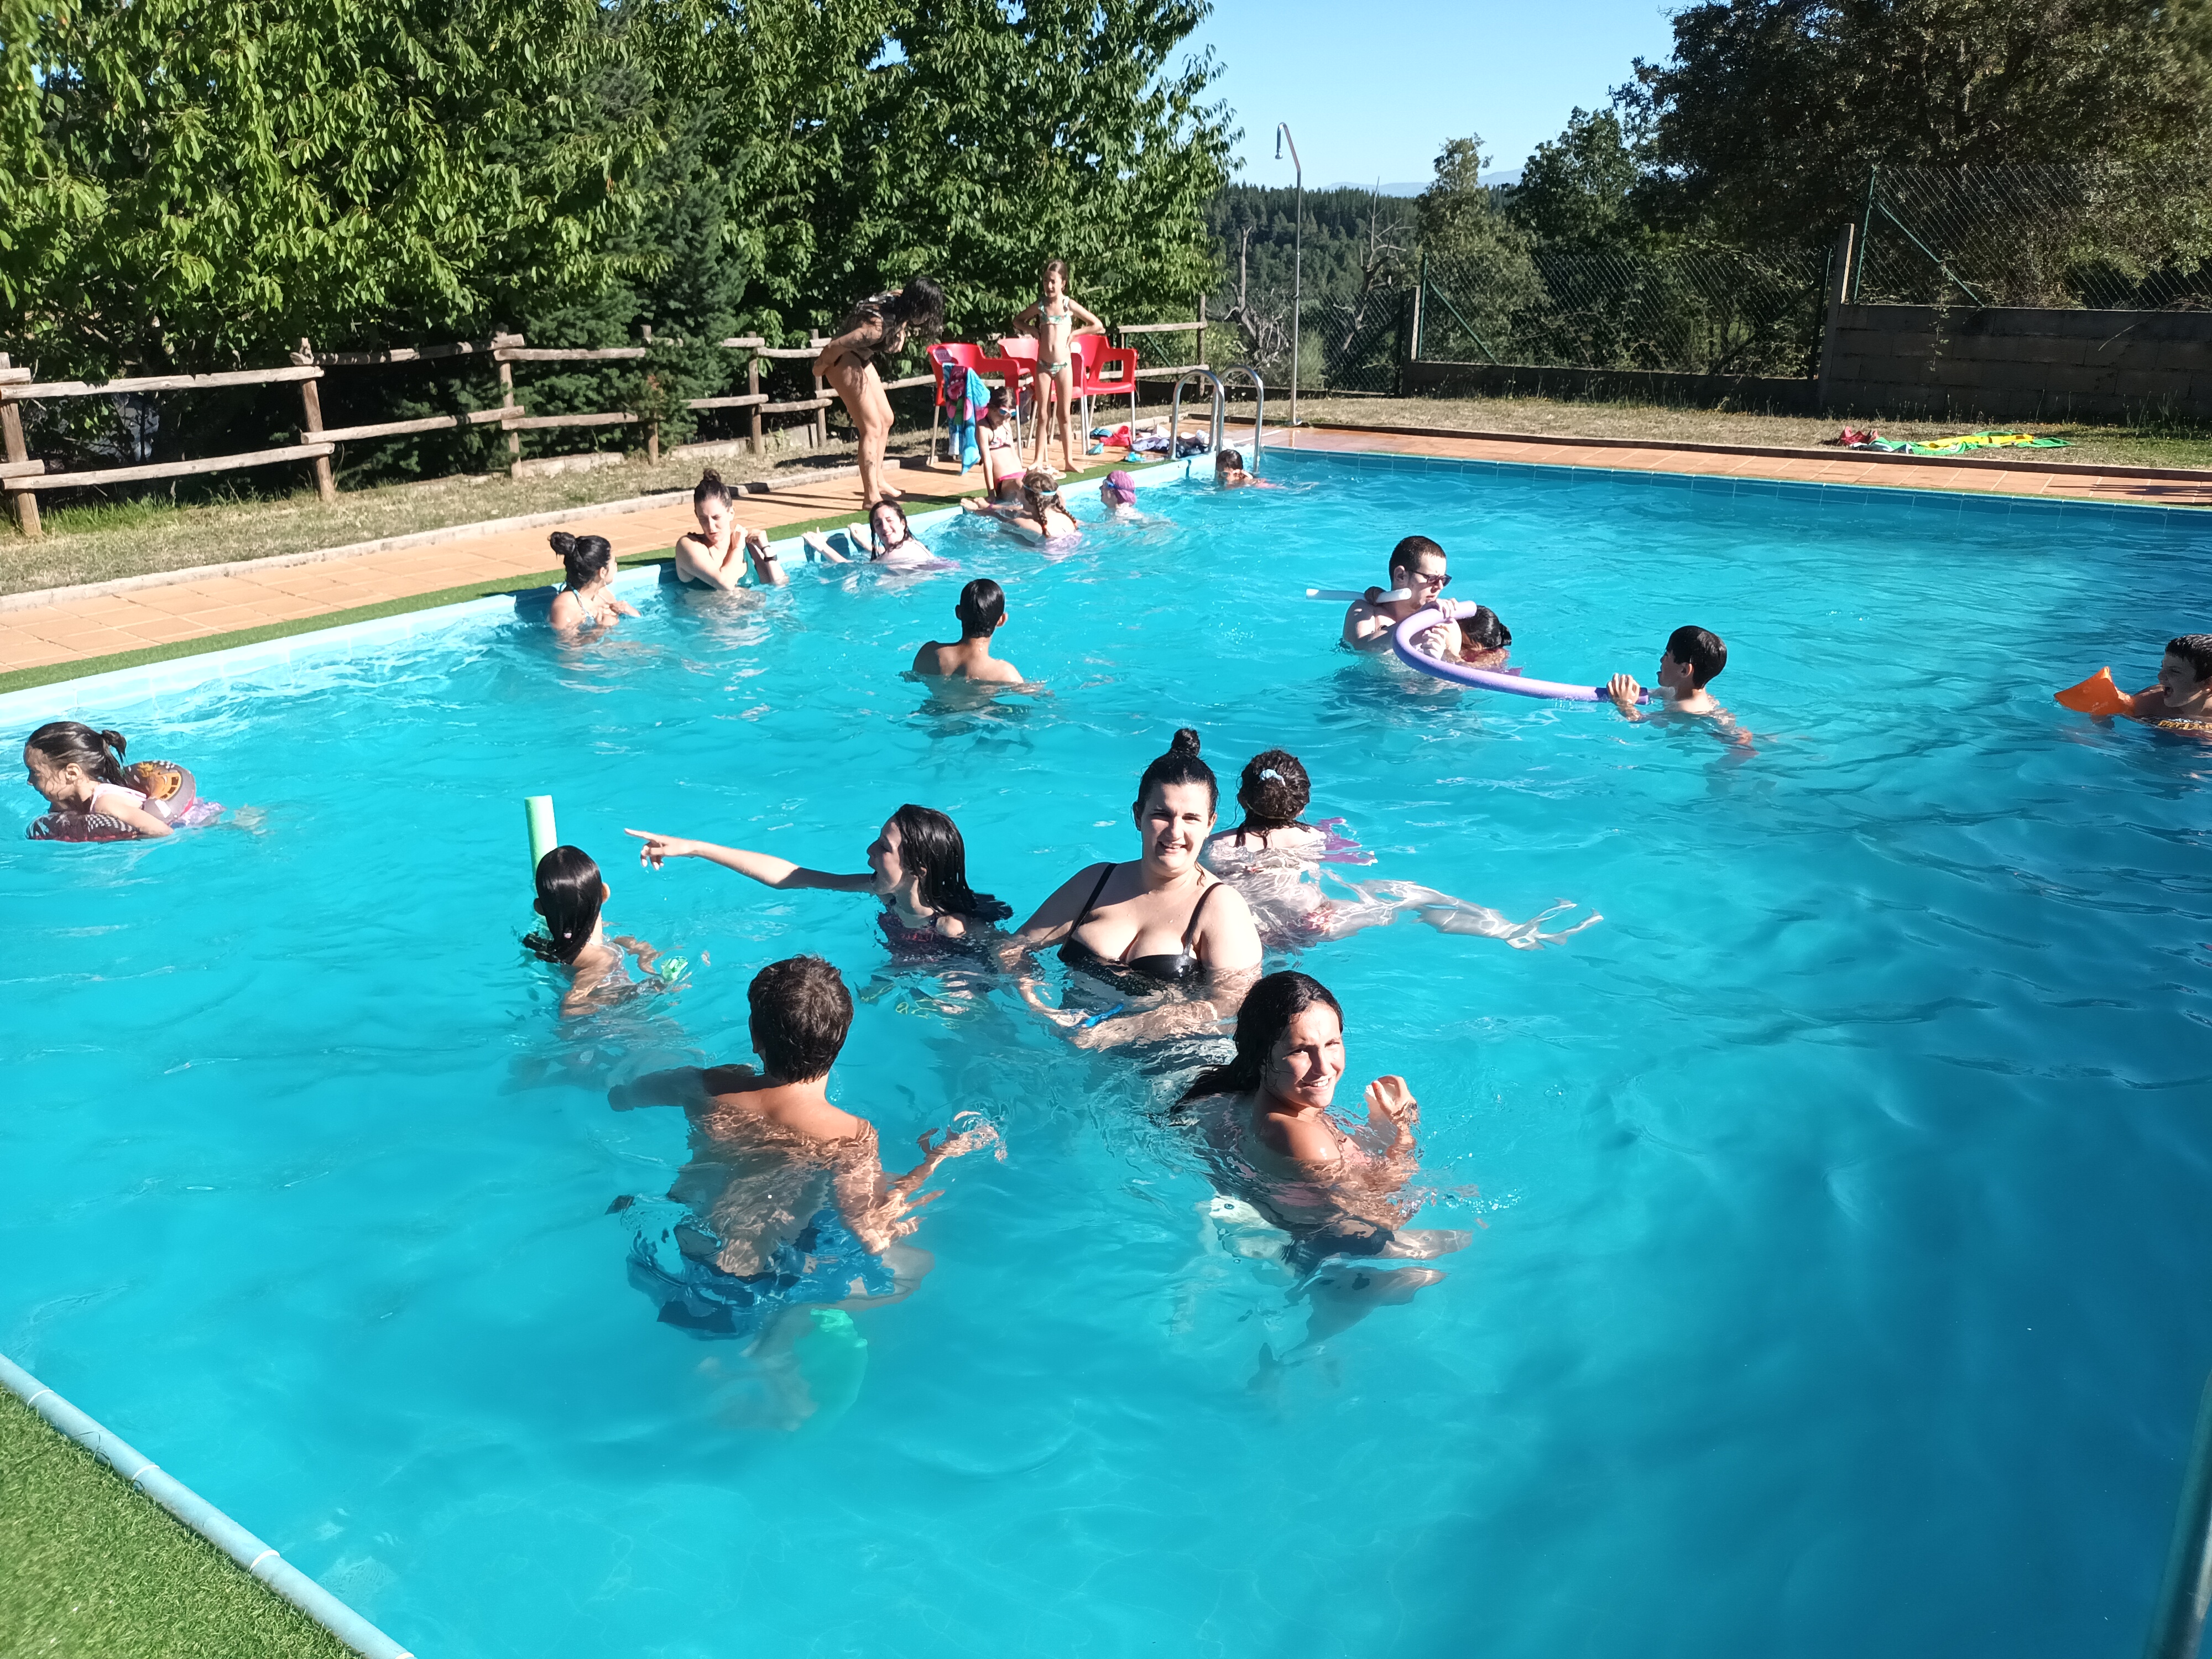 Todos los participantes refrescándose en la piscina